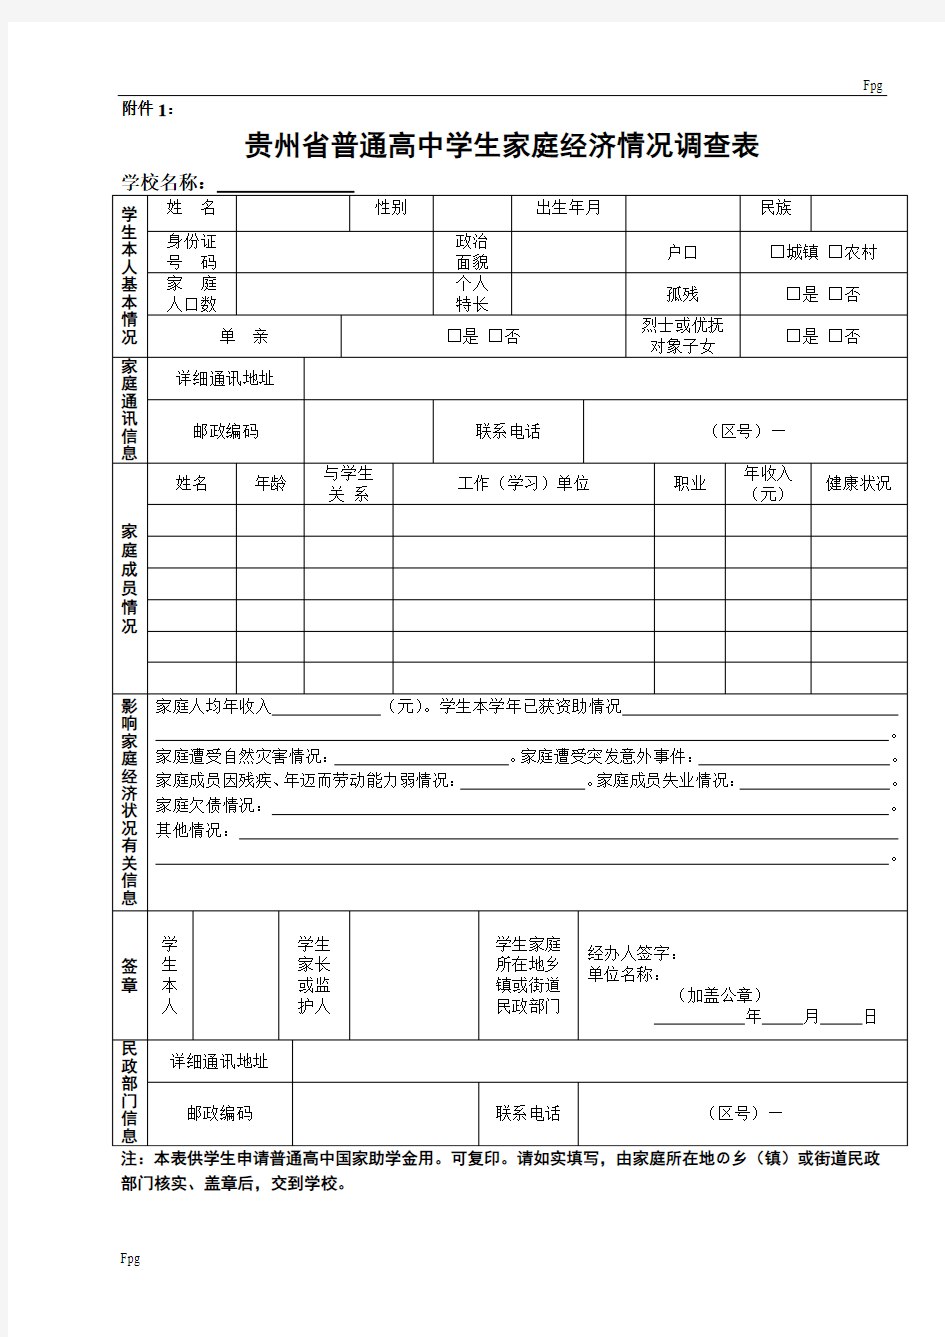 贵州省普通高中国家助学金申请表(附件1-附件2)